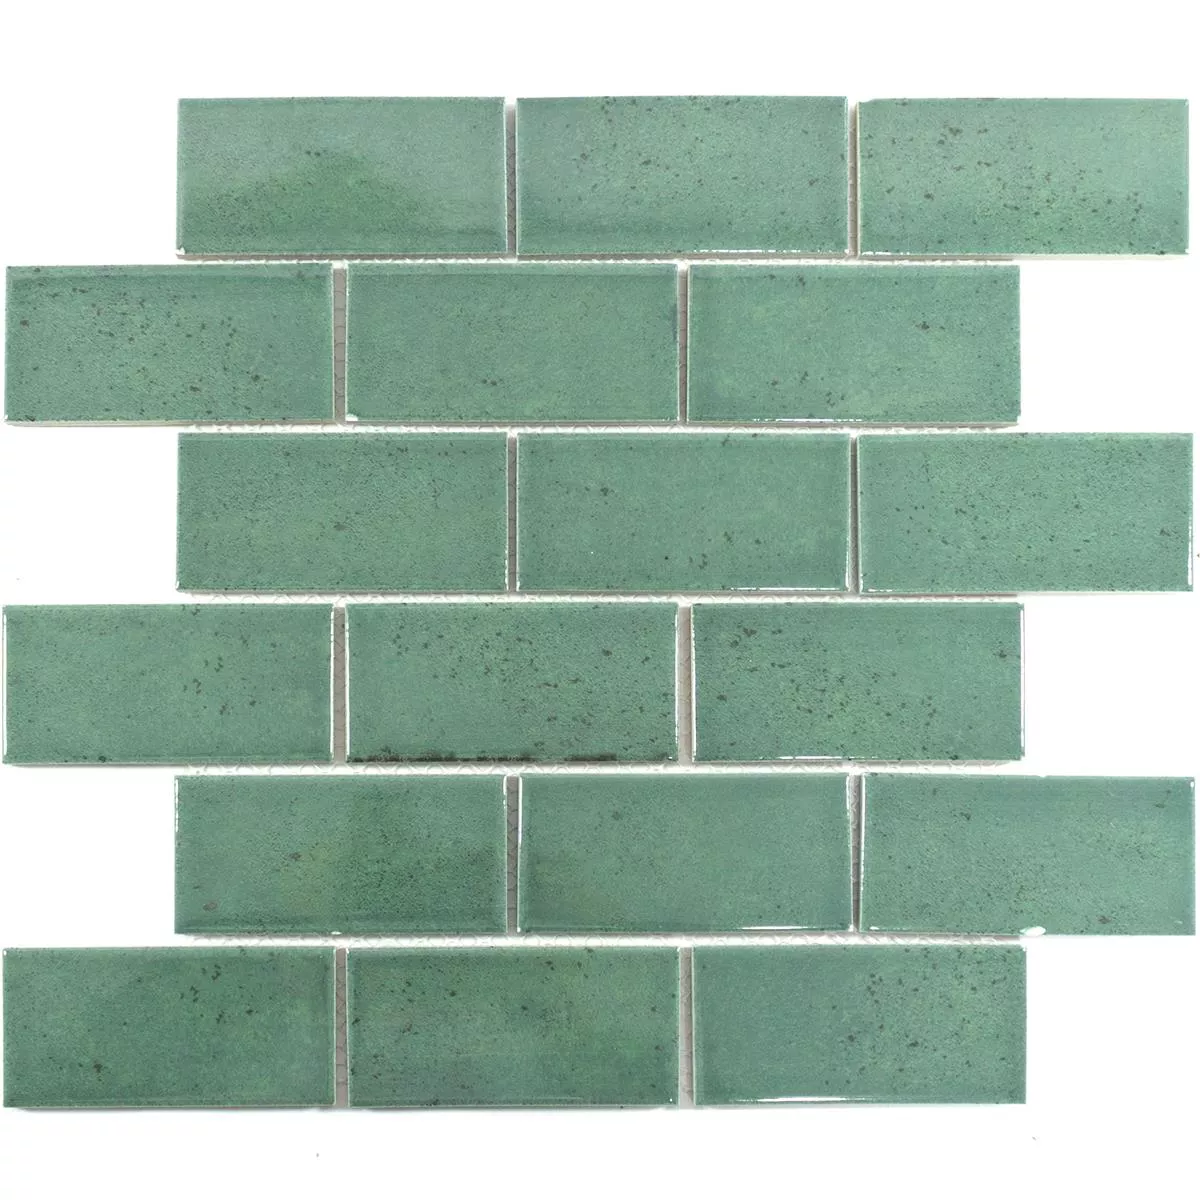 Sample Ceramic Mosaic Tiles Eldertown Brick Dark Green